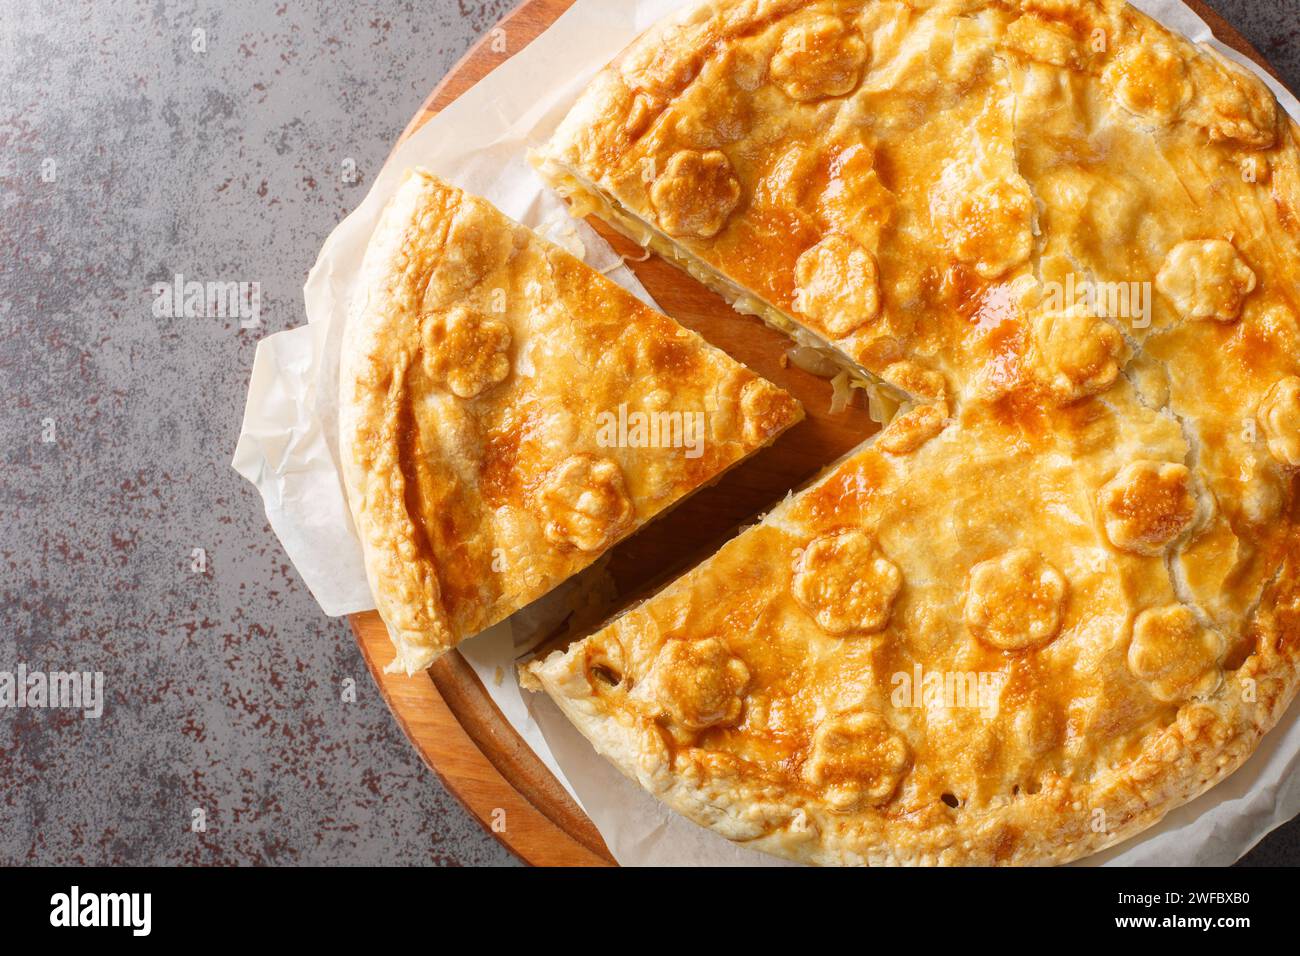 Suisse nourriture Walliser gâteau choléra avec pomme de terre, poireau, pomme, fromage gros plan sur la planche de bois sur la table. Vue de dessus horizontale Banque D'Images